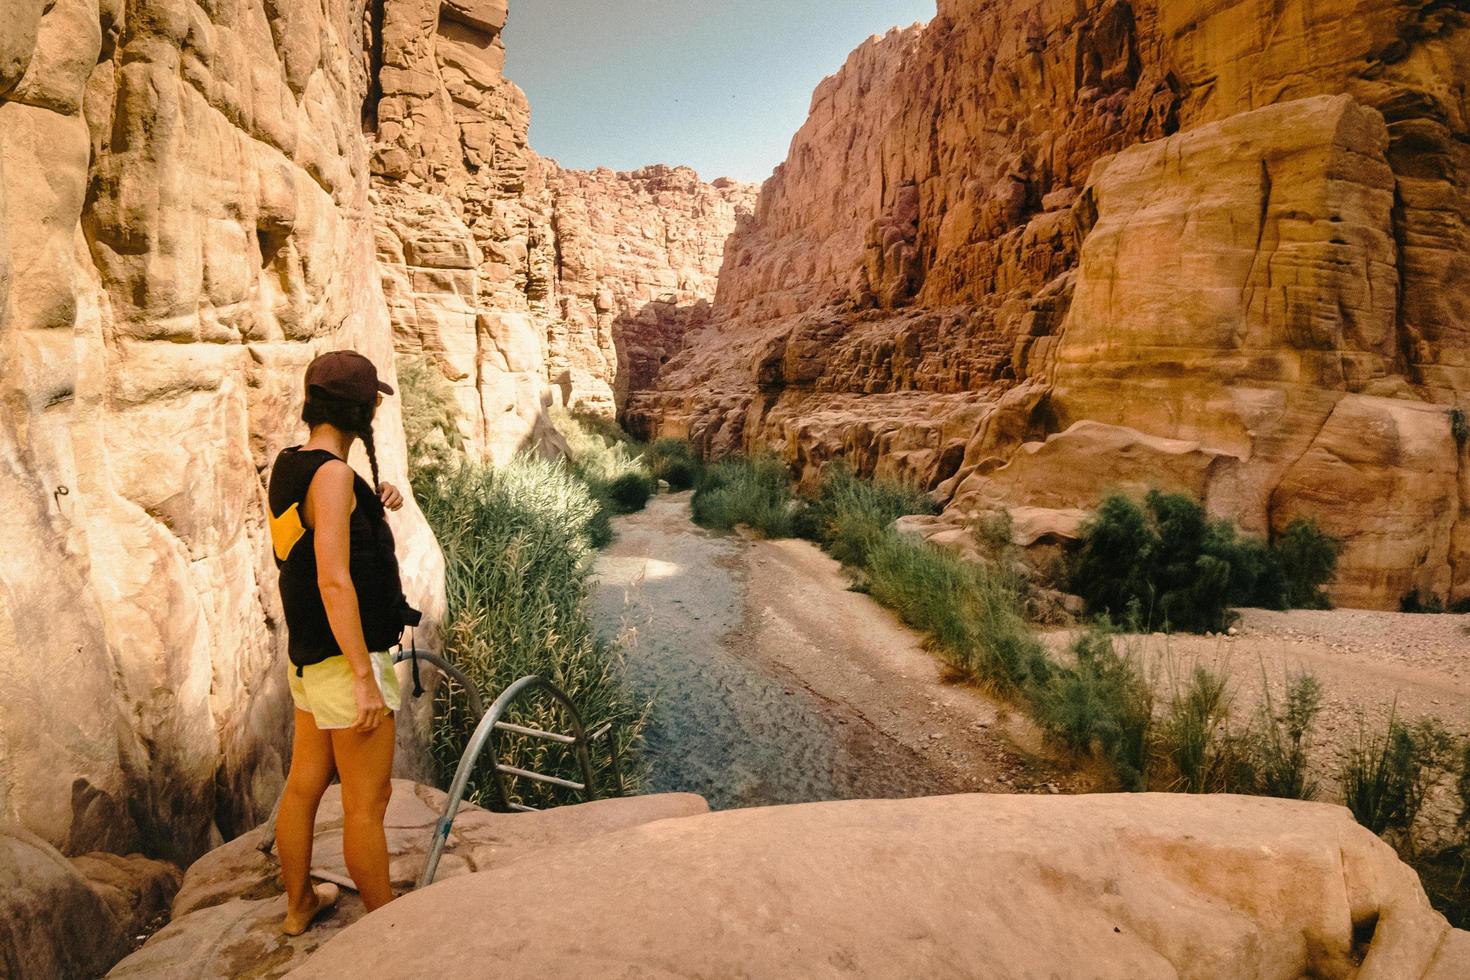 turista feminina desfruta do desfiladeiro do rio de wadi mujib com incríveis cores claras douradas. wadi mujib está localizado na área do mar morto na jordânia foto